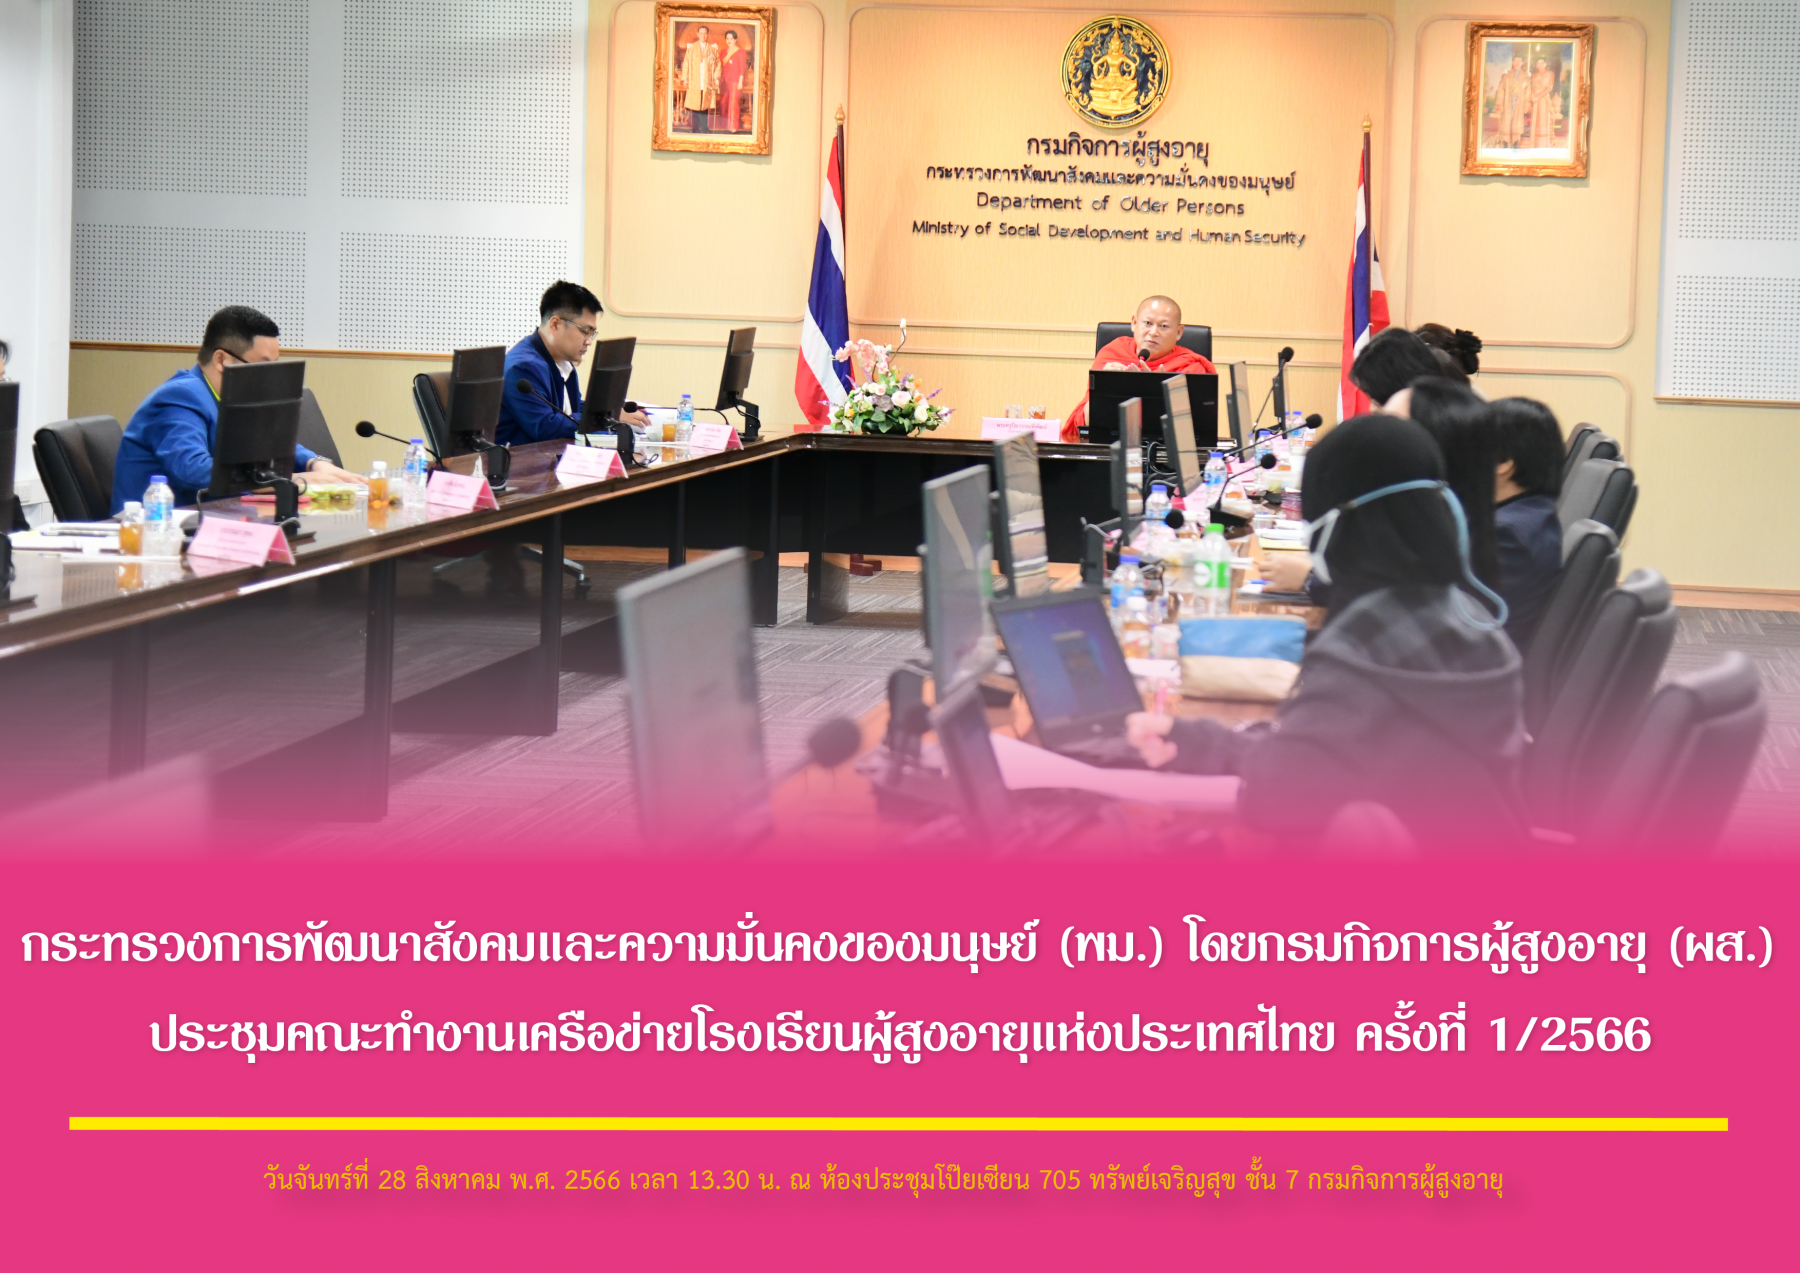 กระทรวงการพัฒนาสังคมและความมั่นคงของมนุษย์ (พม.) โดยกรมกิจการผู้สูงอายุ (ผส.) ประชุมคณะทำงานเครือข่ายโรงเรียนผู้สูงอายุแห่งประเทศไทย ครั้งที่ 1/2566